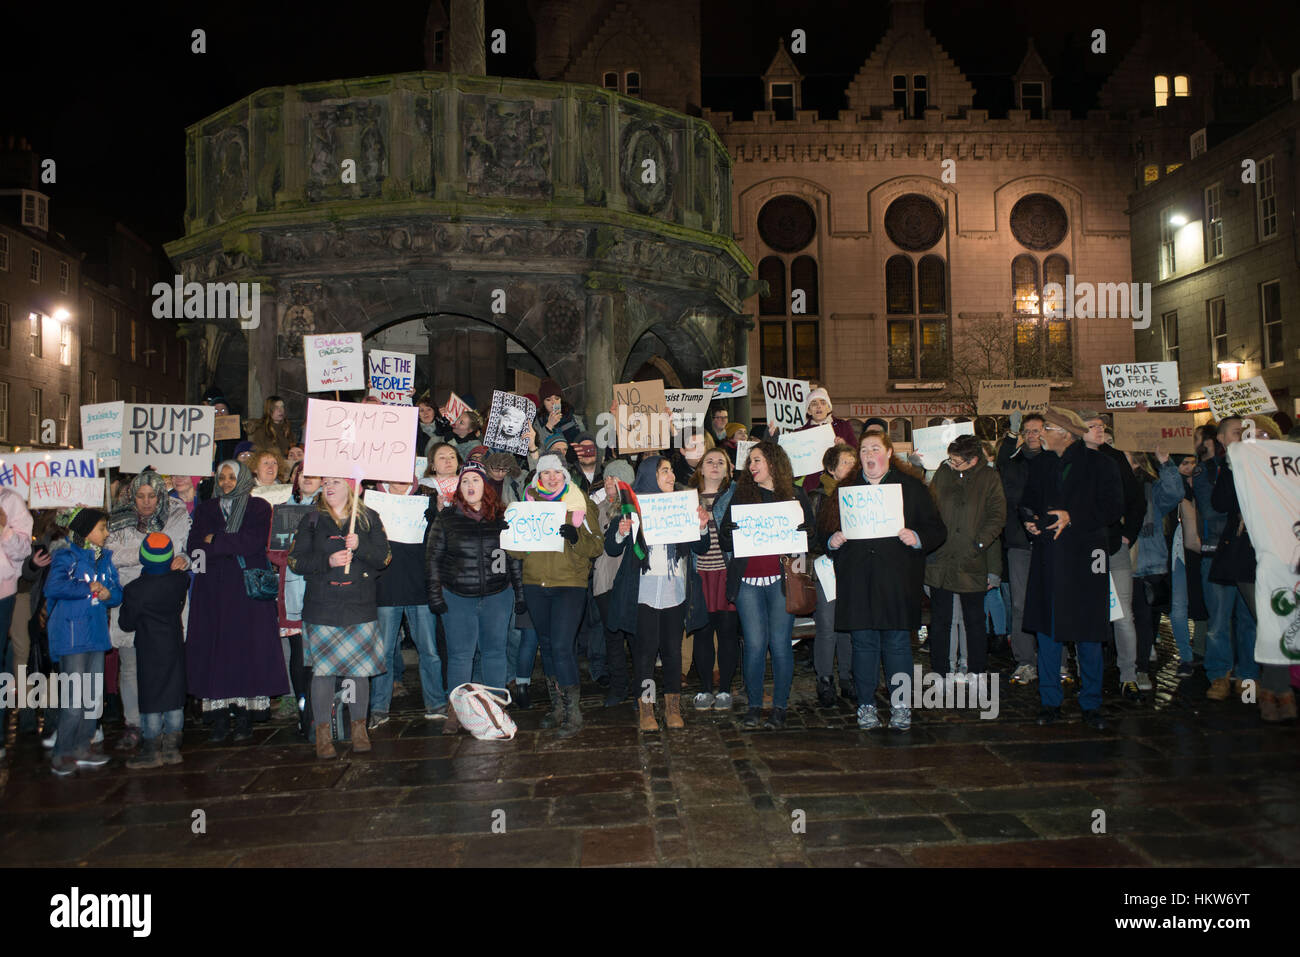 Aberdeen, Royaume-Uni. 30 janvier, 2017. Anti-Trump protester contre l'interdiction de voyager attire des centaines de personnes dans le centre de Aberdeen, Ecosse. Crédit : Paul Glendell/Alamy Live News Banque D'Images